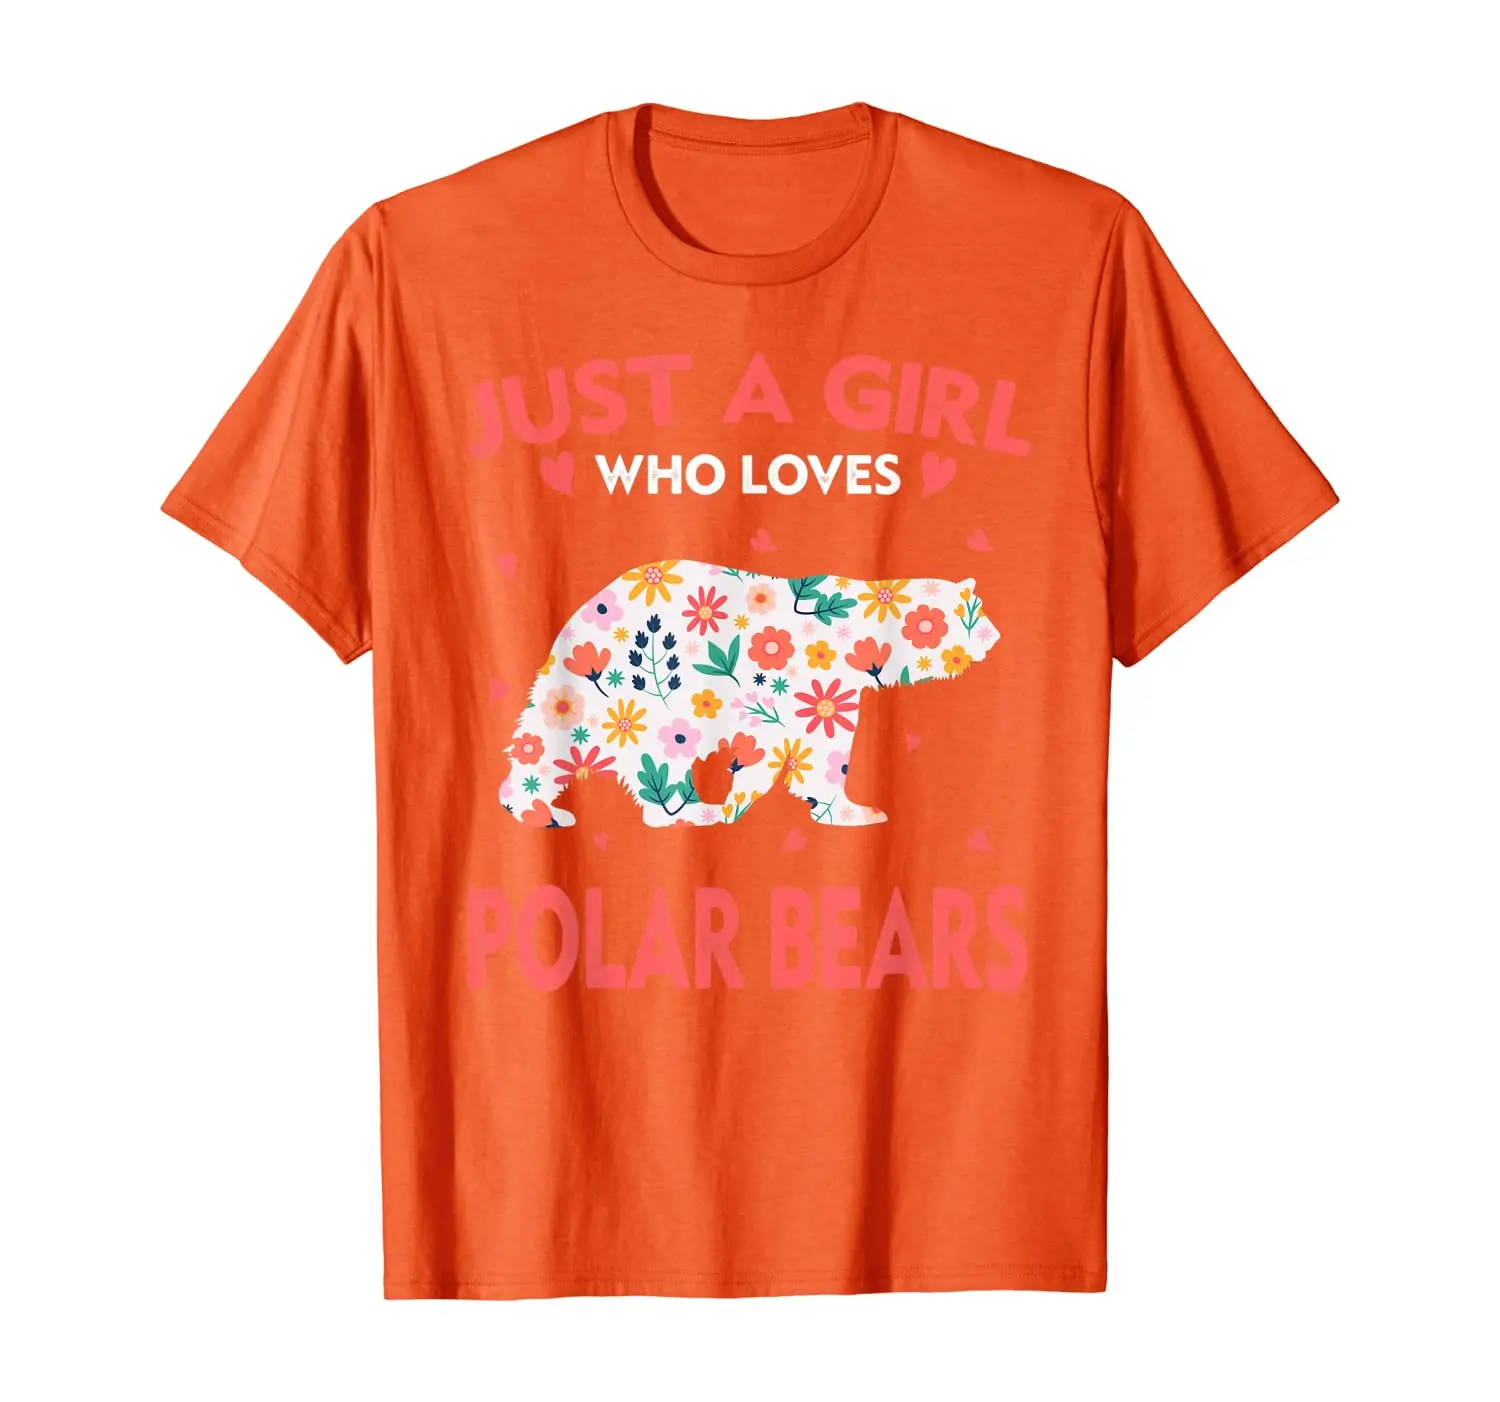 

Футболка «только девушка, которая любит белых медведей», футболка с милыми животными для влюбленных